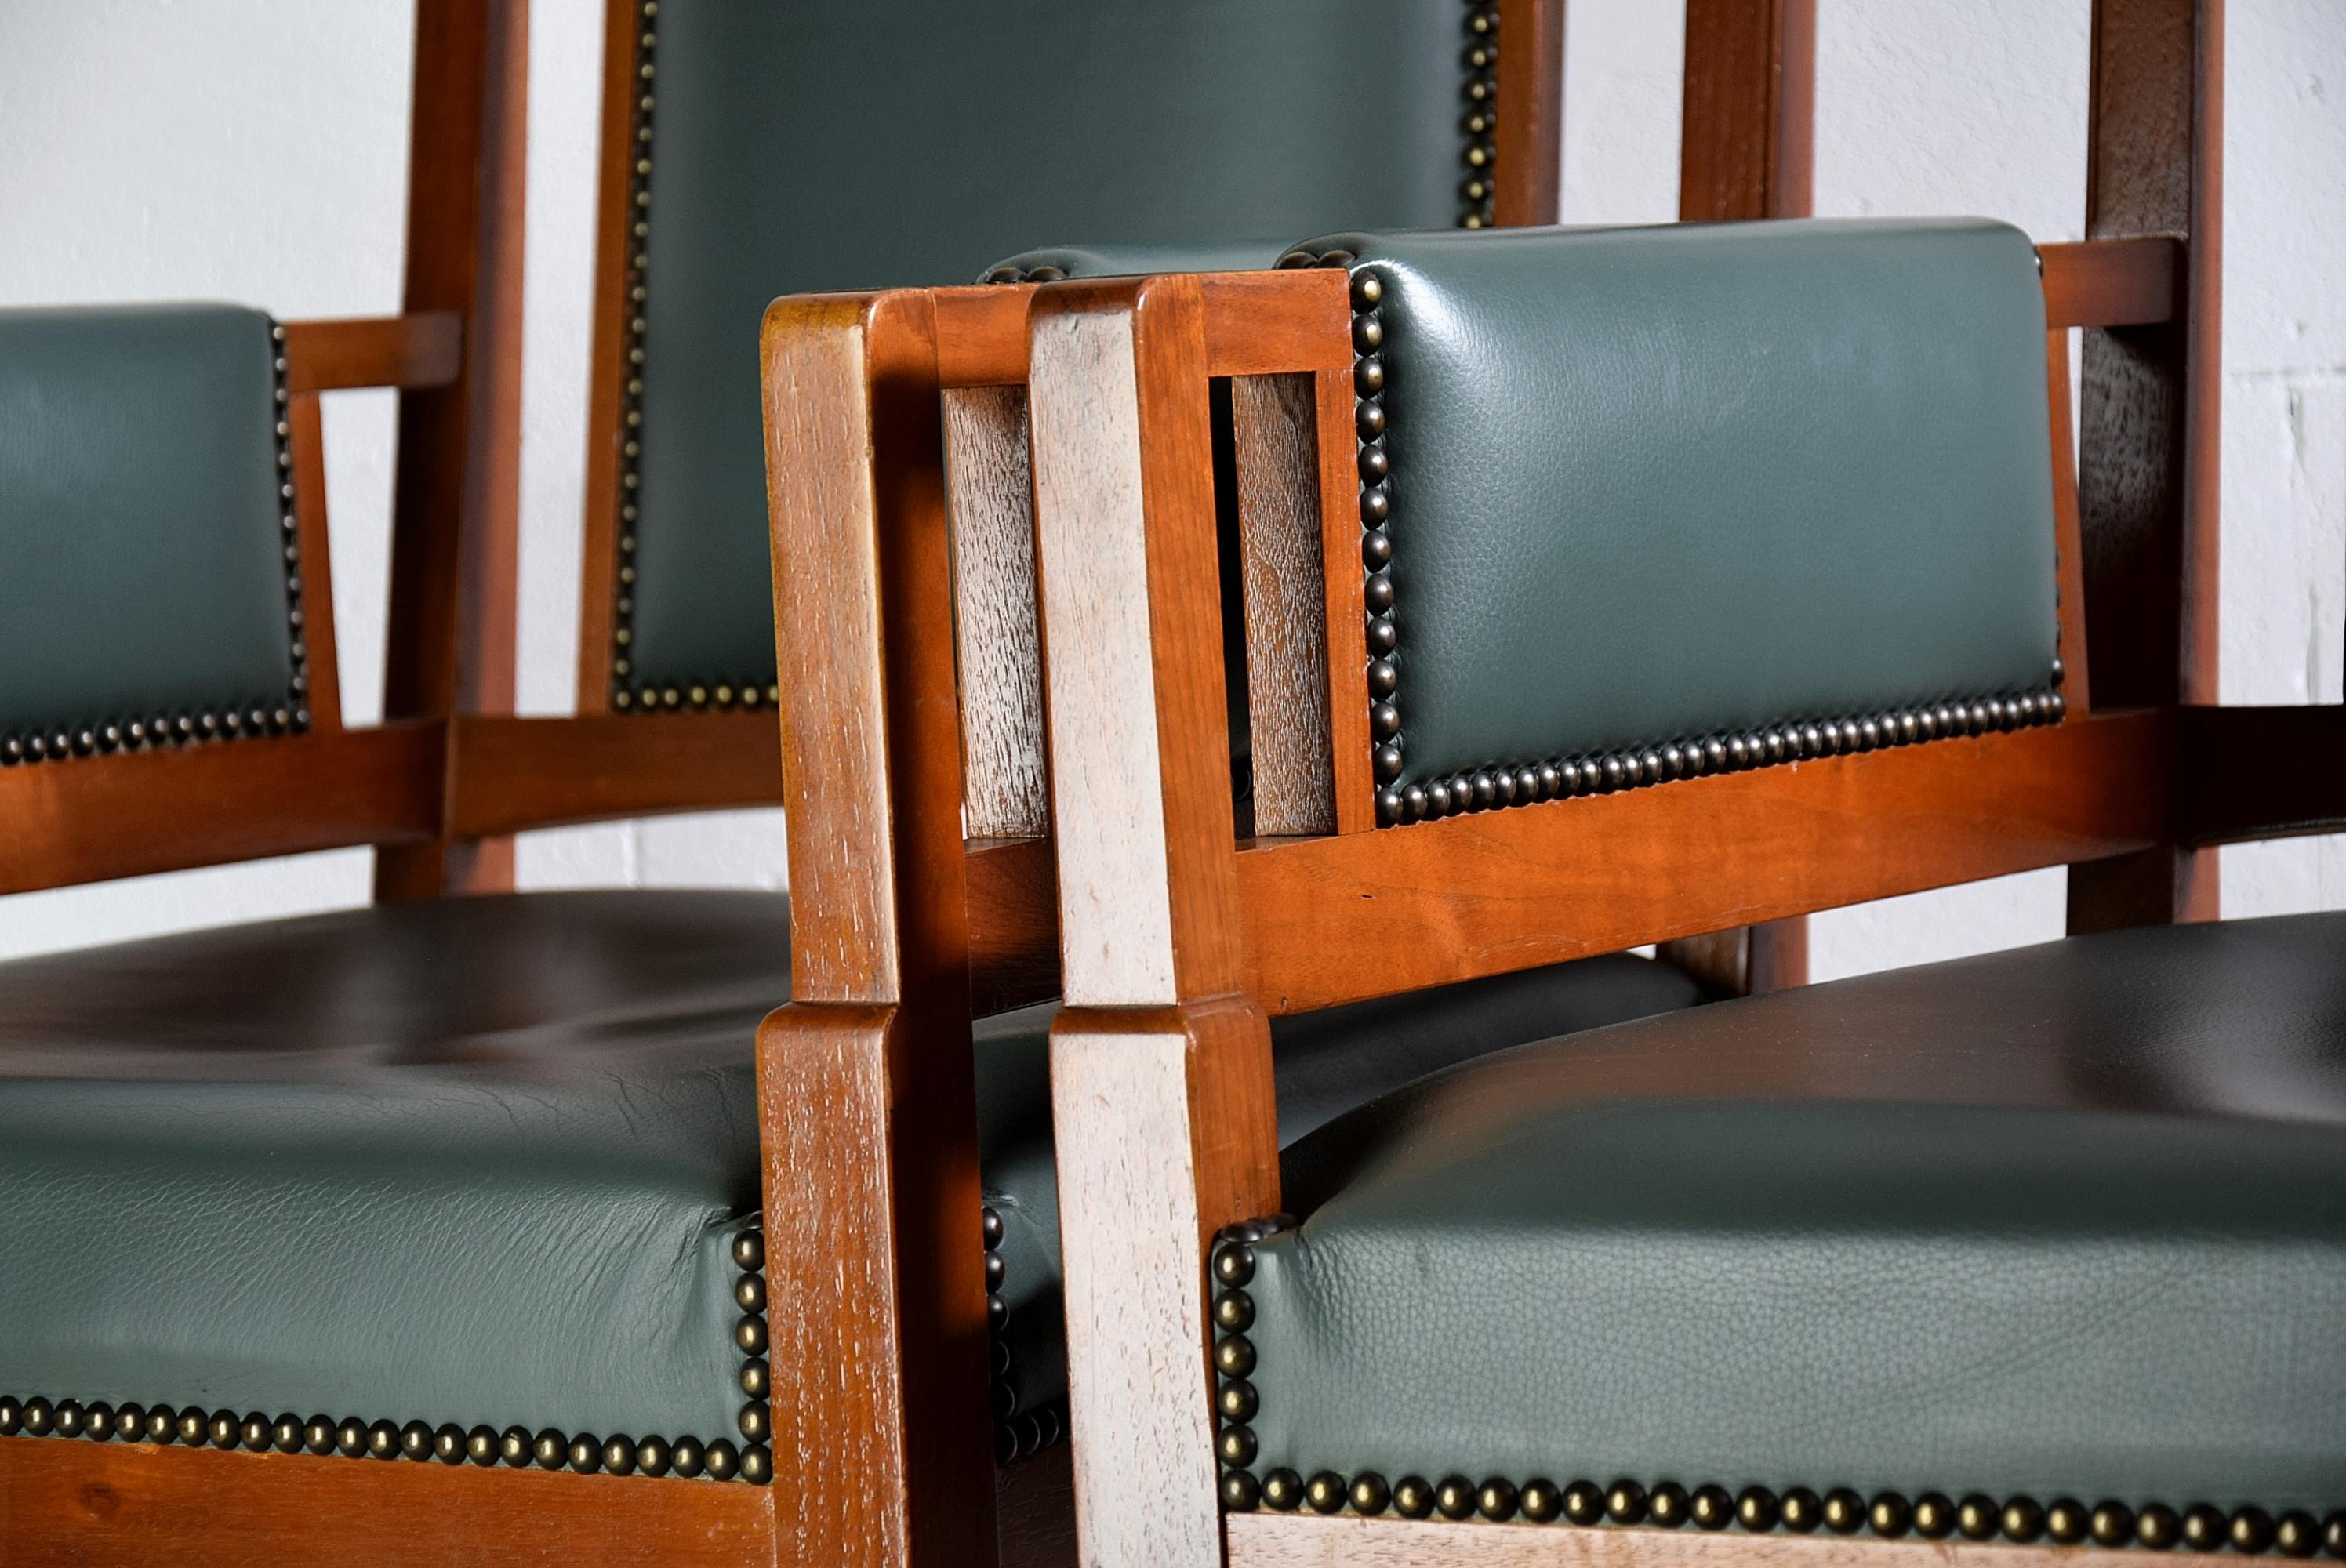 Paire de fauteuils en hêtre teinté, élégants et sophistiqués, fabriqués à la main par Pander & sons à La Haye en 1915. Les deux chaises (nous avons également le canapé deux places assorti à vendre) ont été retapissées en cuir vert il y a trois ans.